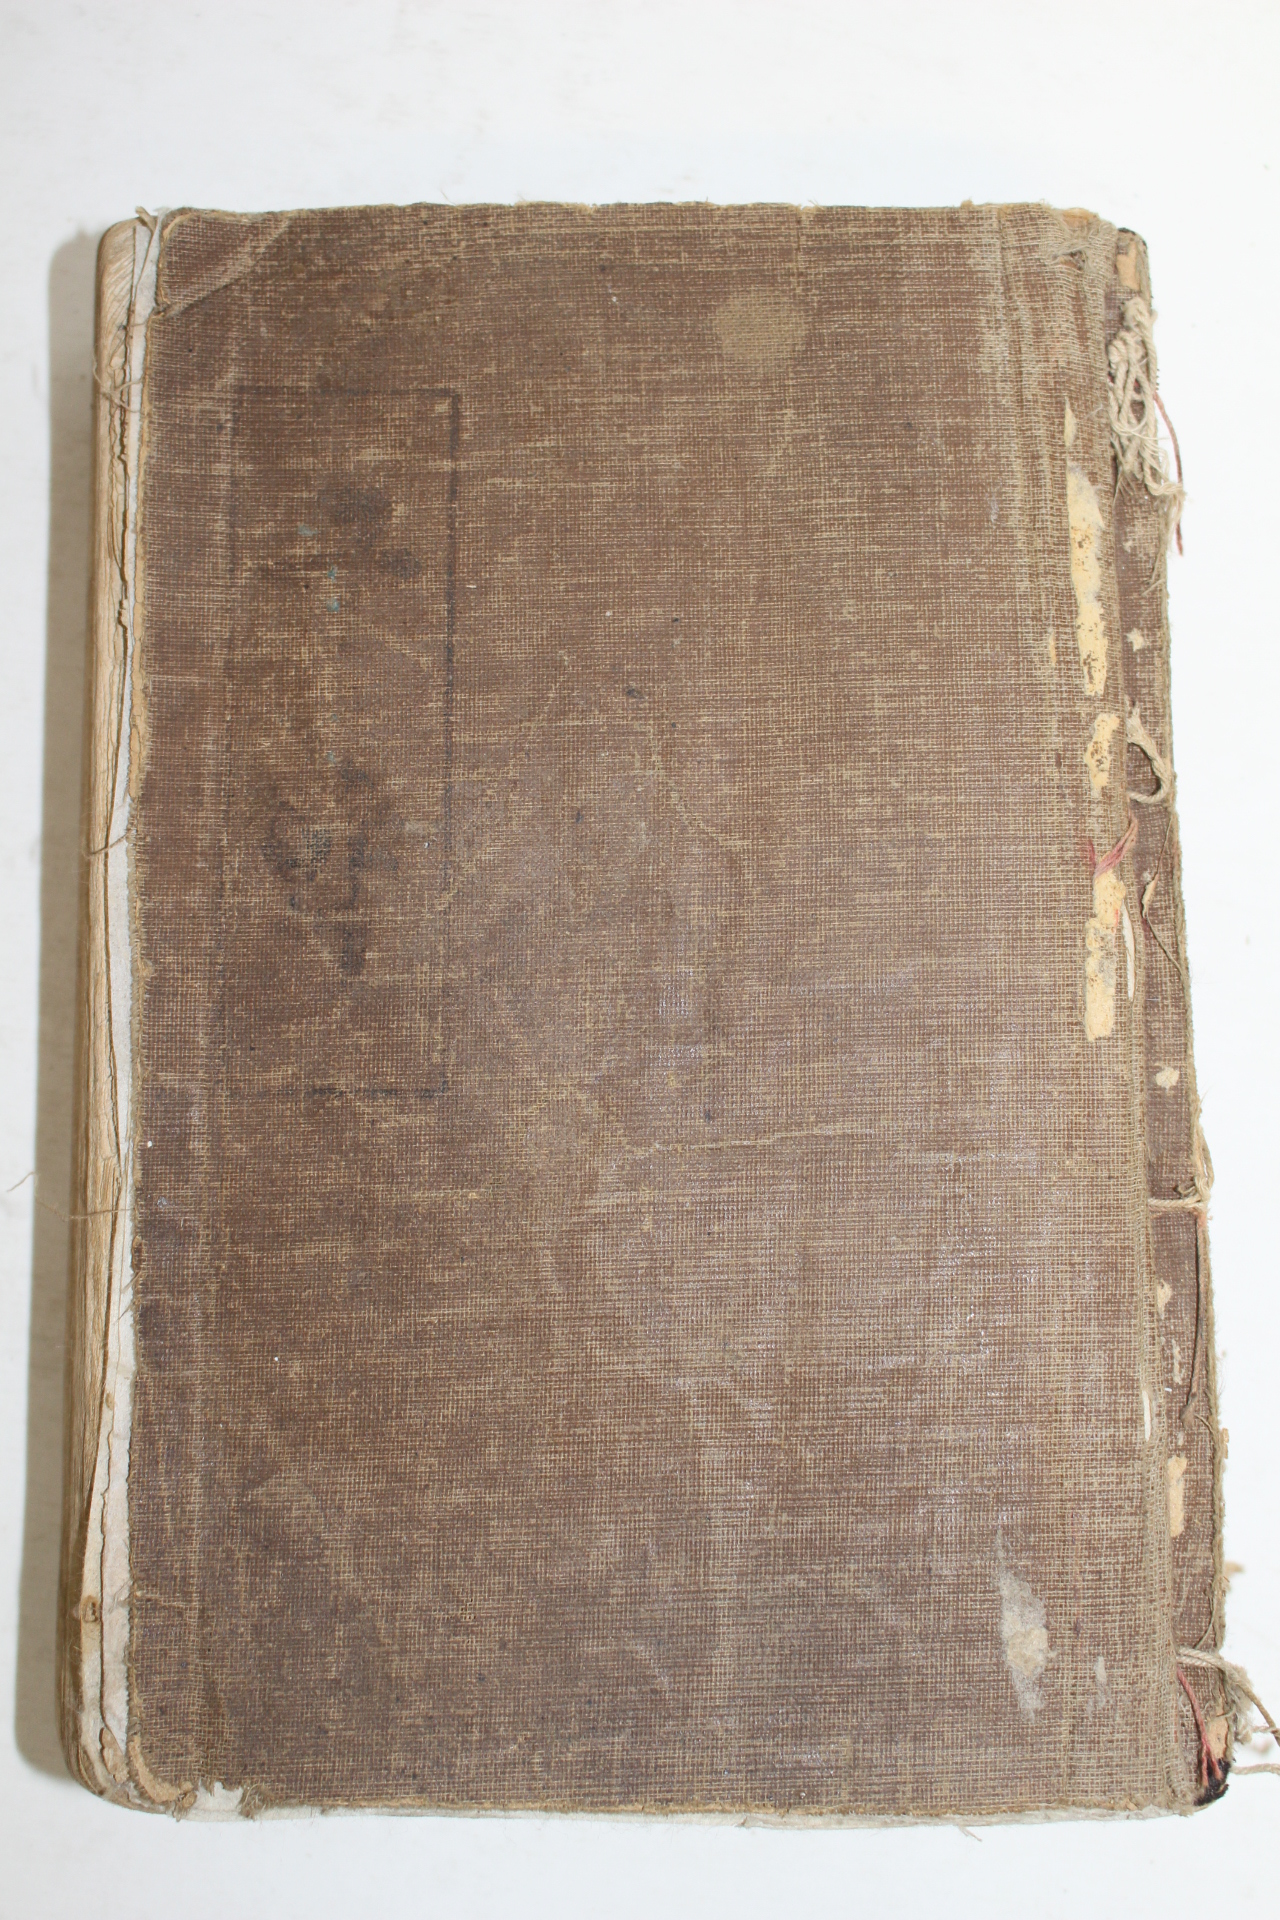 1936년 순한글본 구약성서